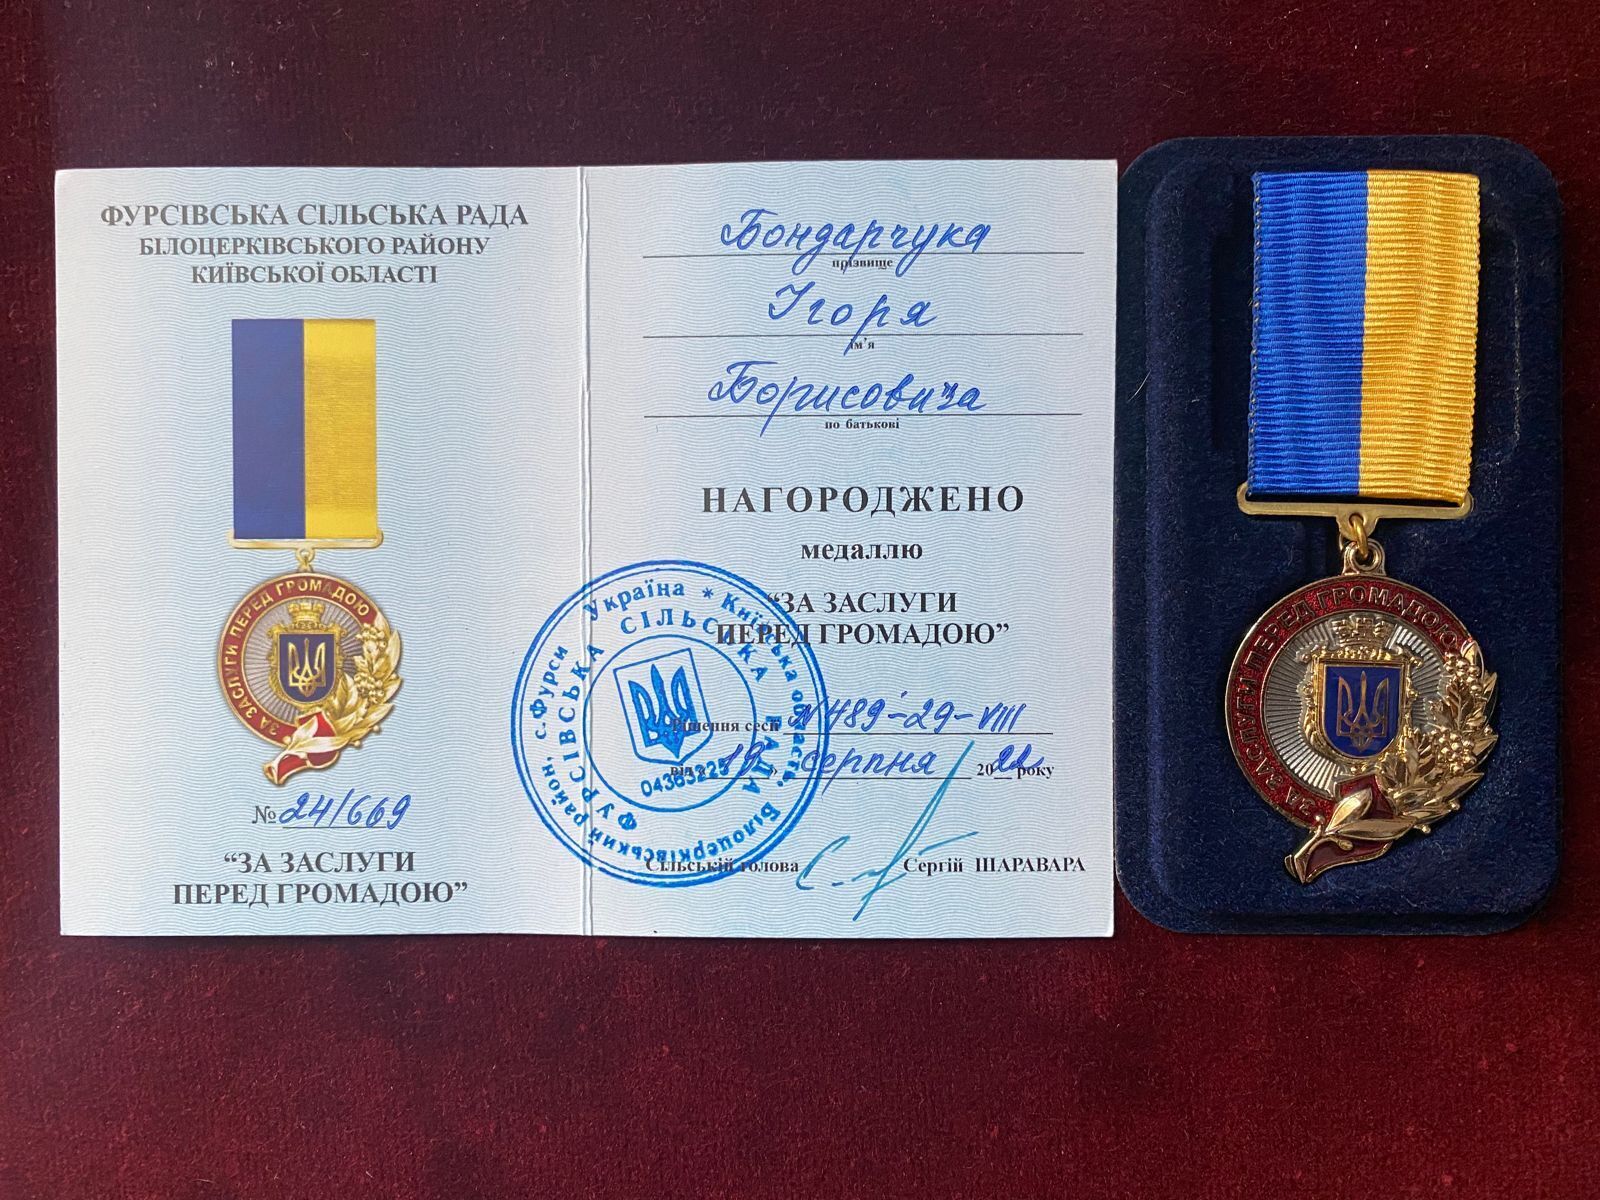 Медалью был отмечен представитель БФ ''Волонтер'' Игорь Бондарчук